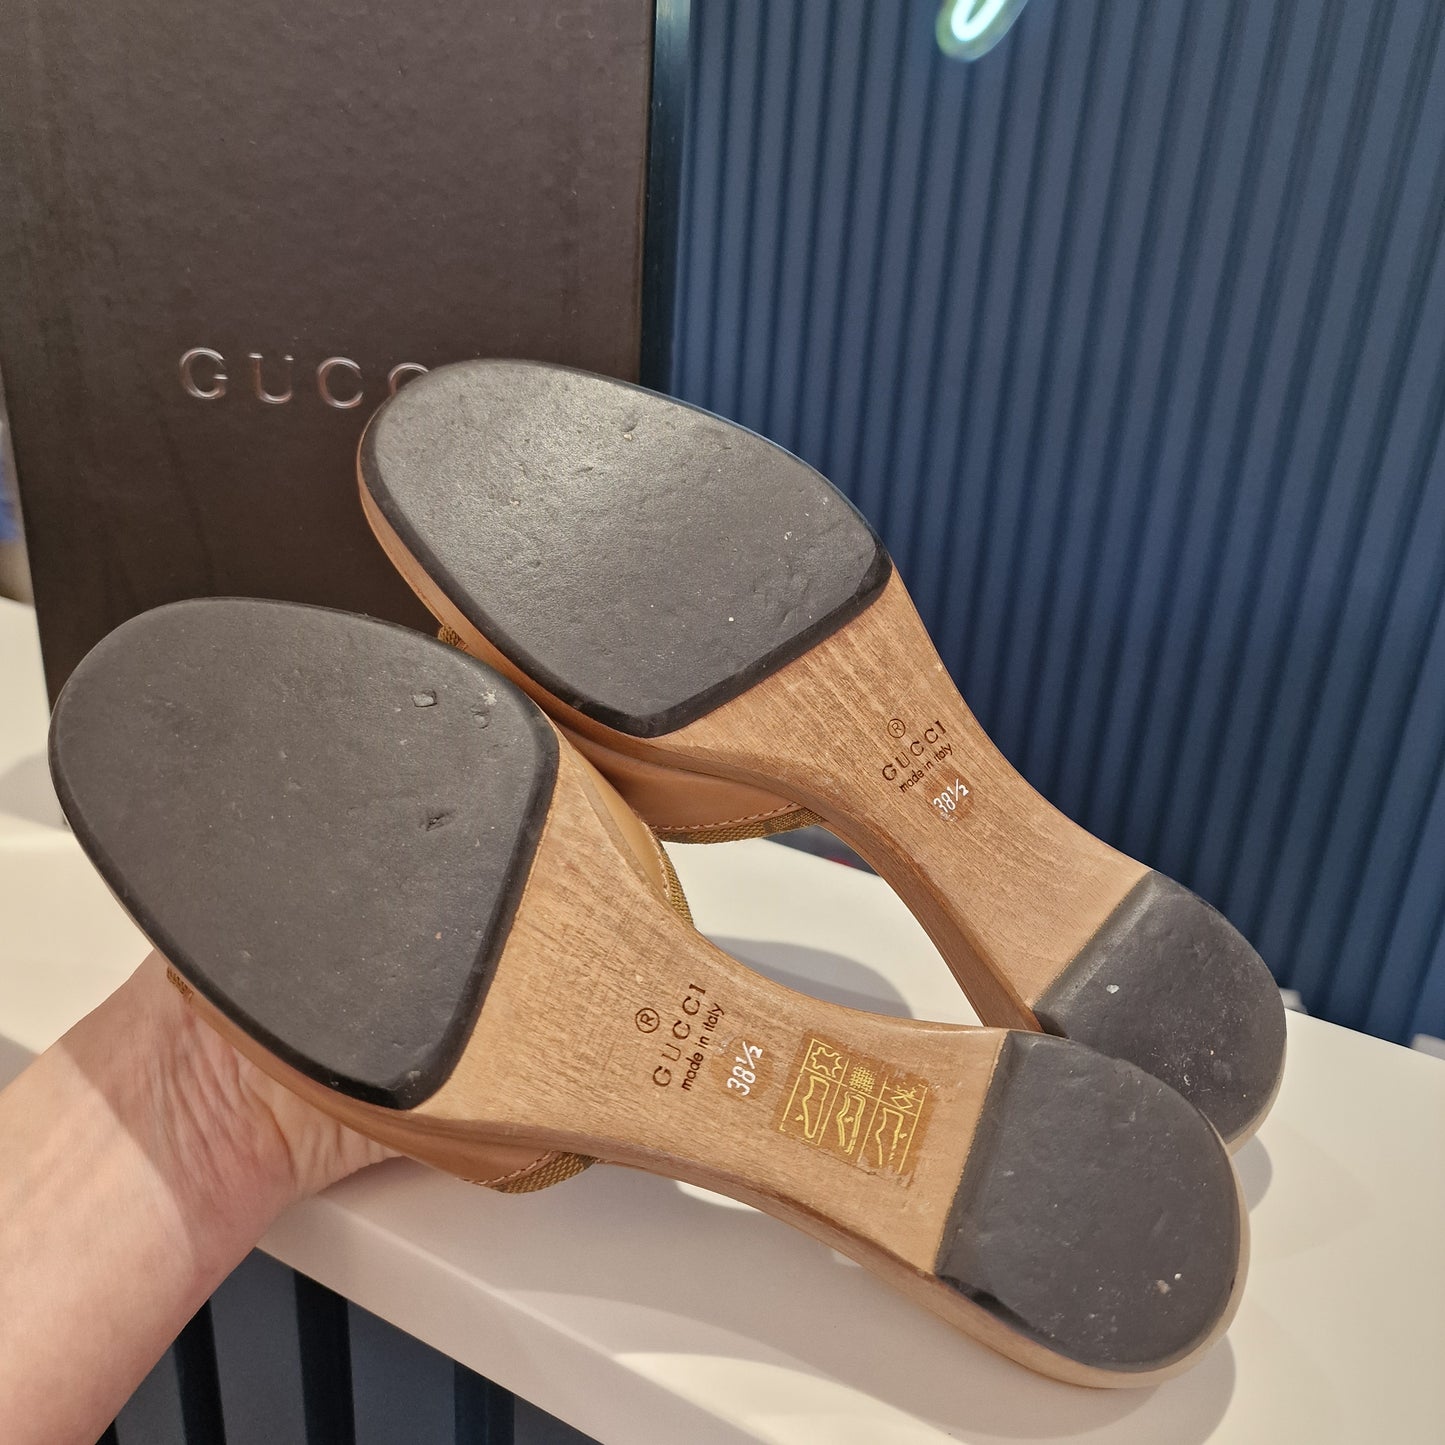 Gucci Slides, tan. Size 38.5/5.5